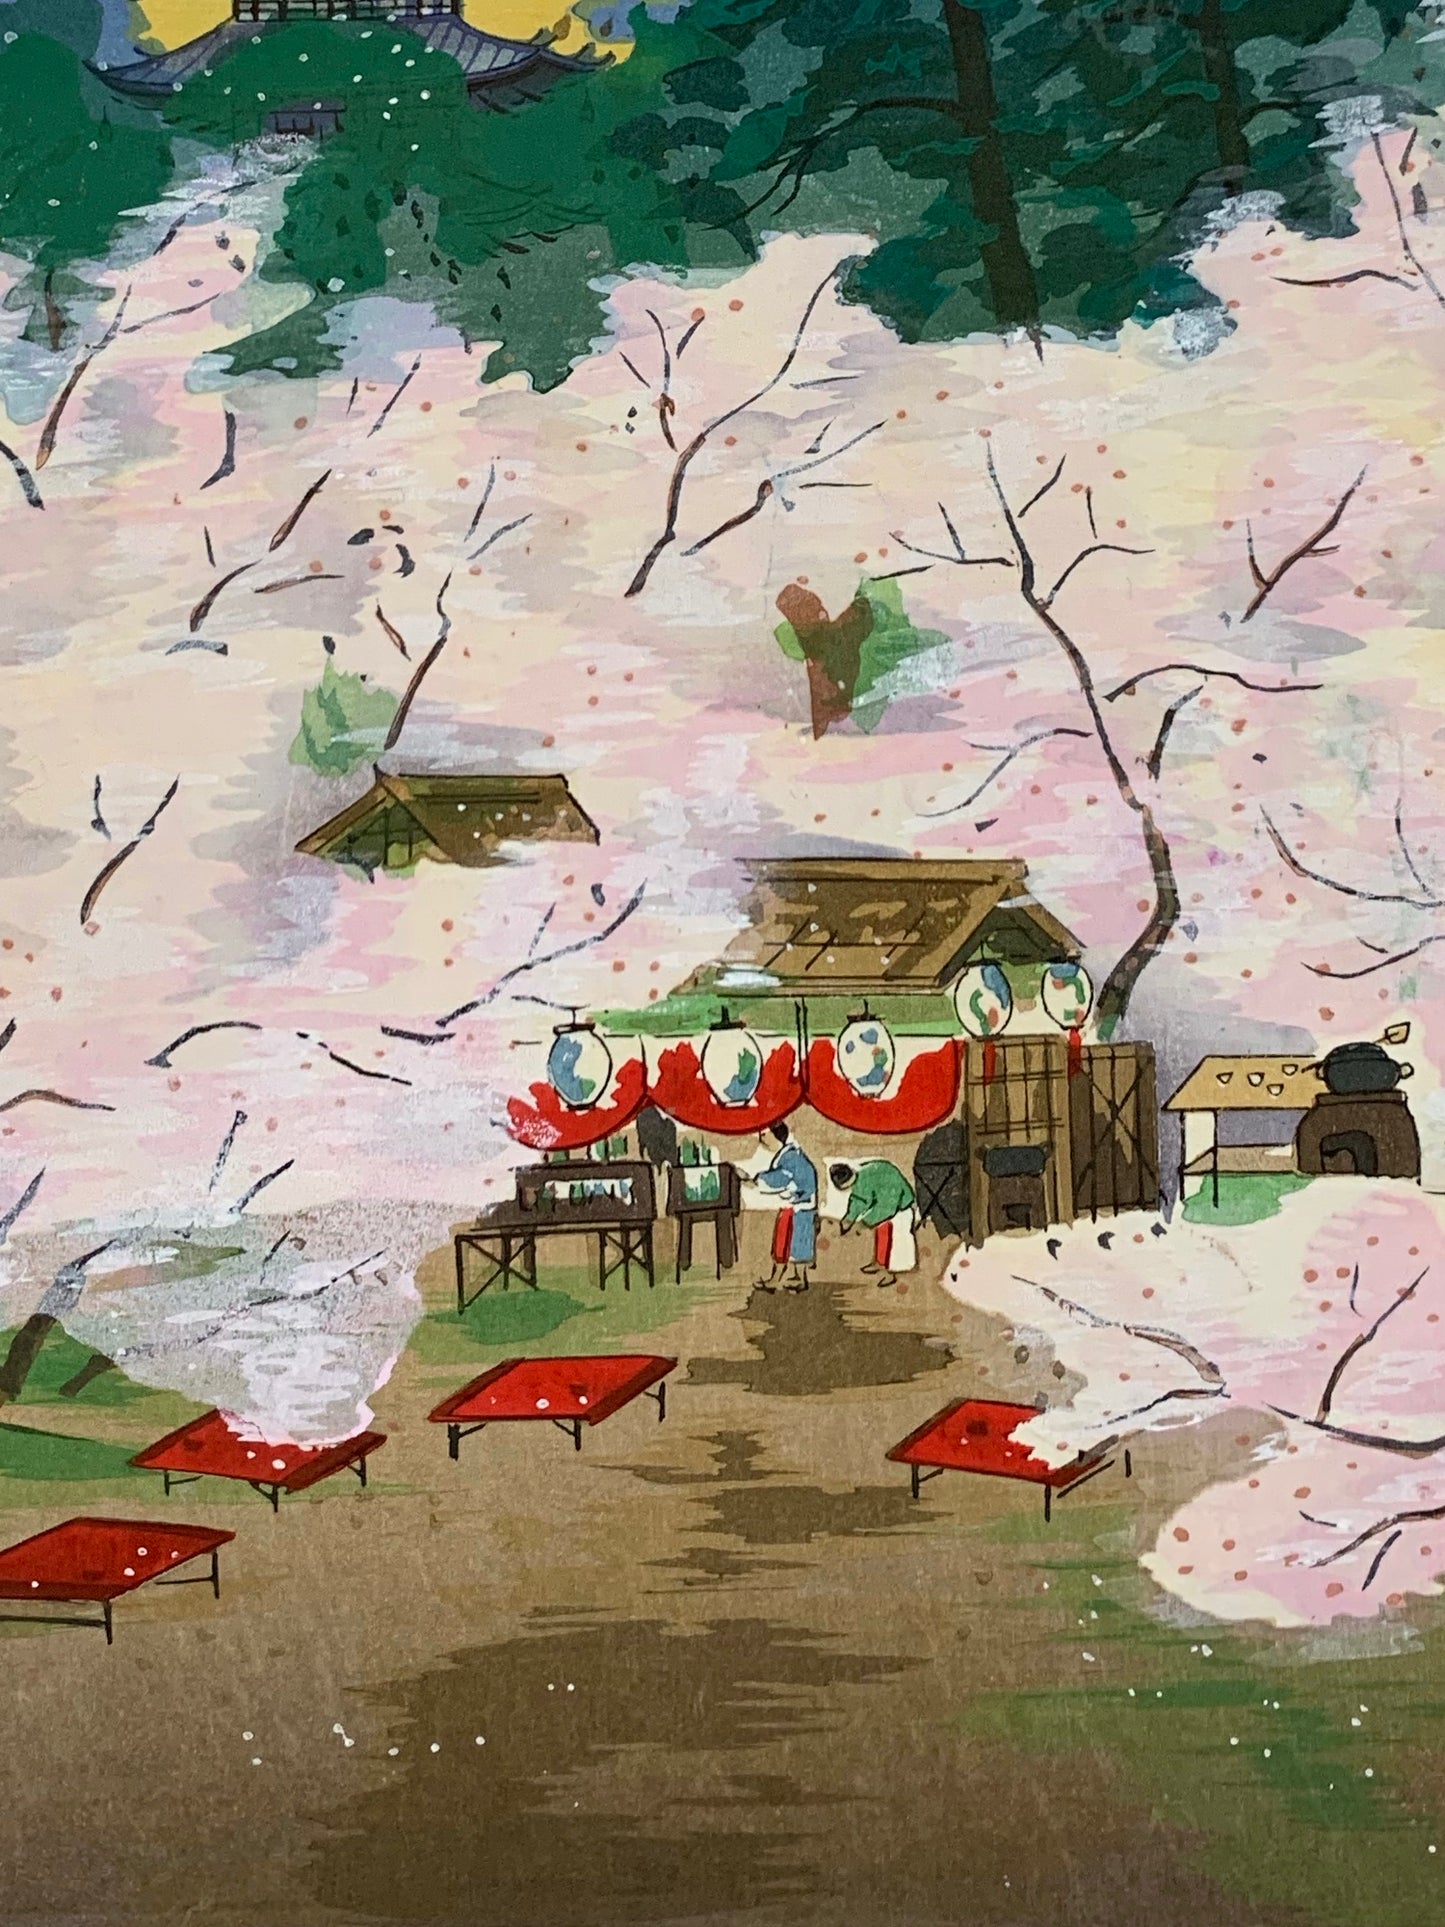 estampe japonaise cerisiers en fleurs dans le jardin d'un temple avec une pagode, gros plan sur les tables rouges sous les cerisiers en fleurs